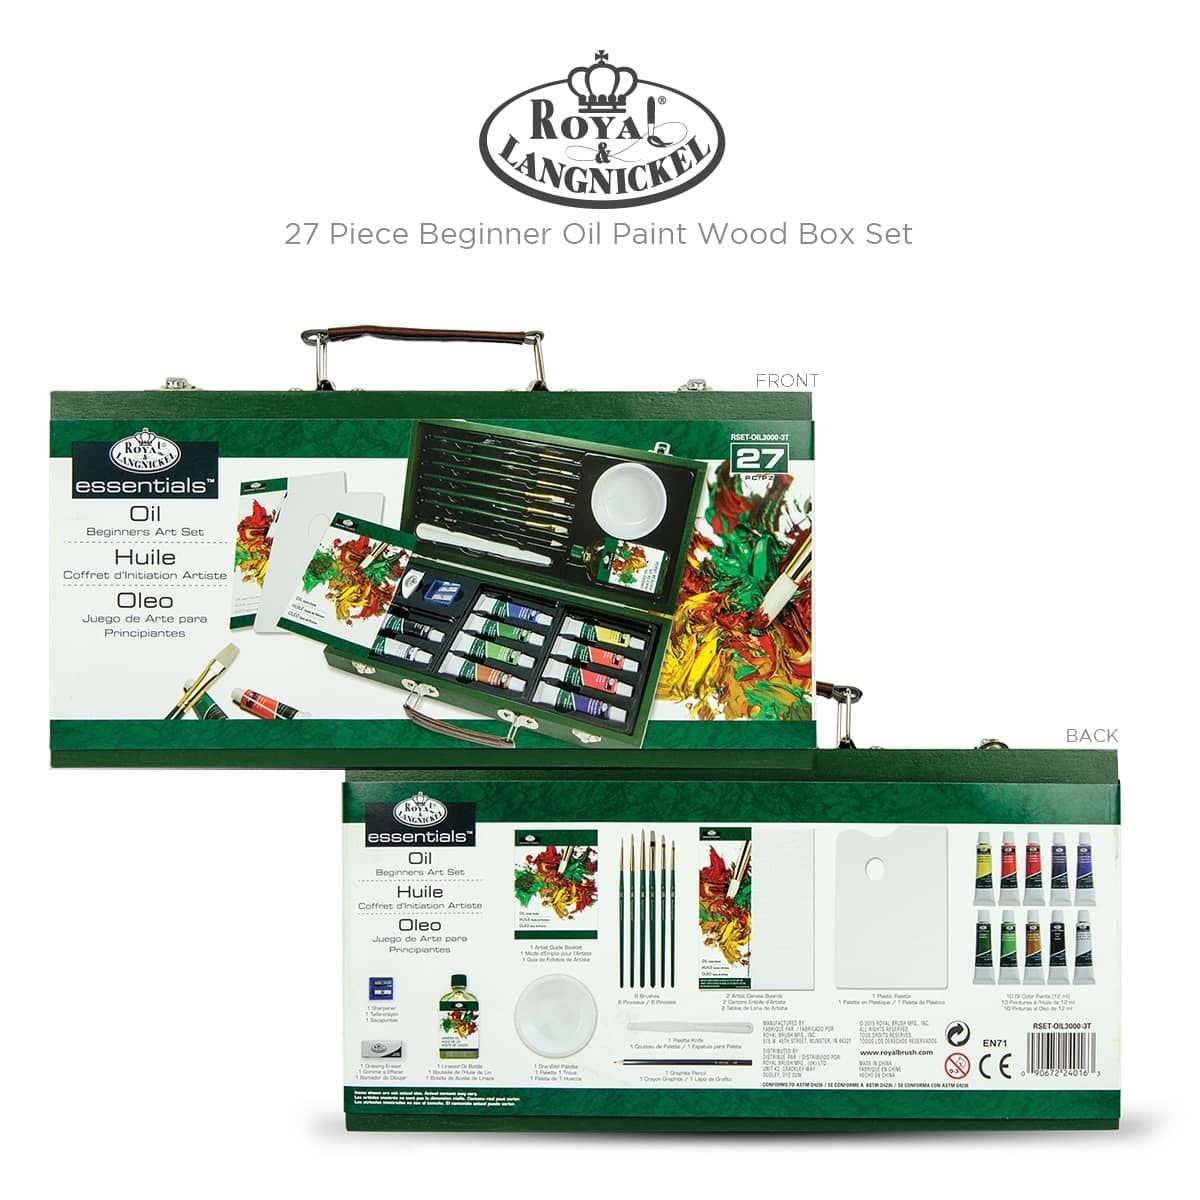 Royal & Langnickel Wood Box Art Sets